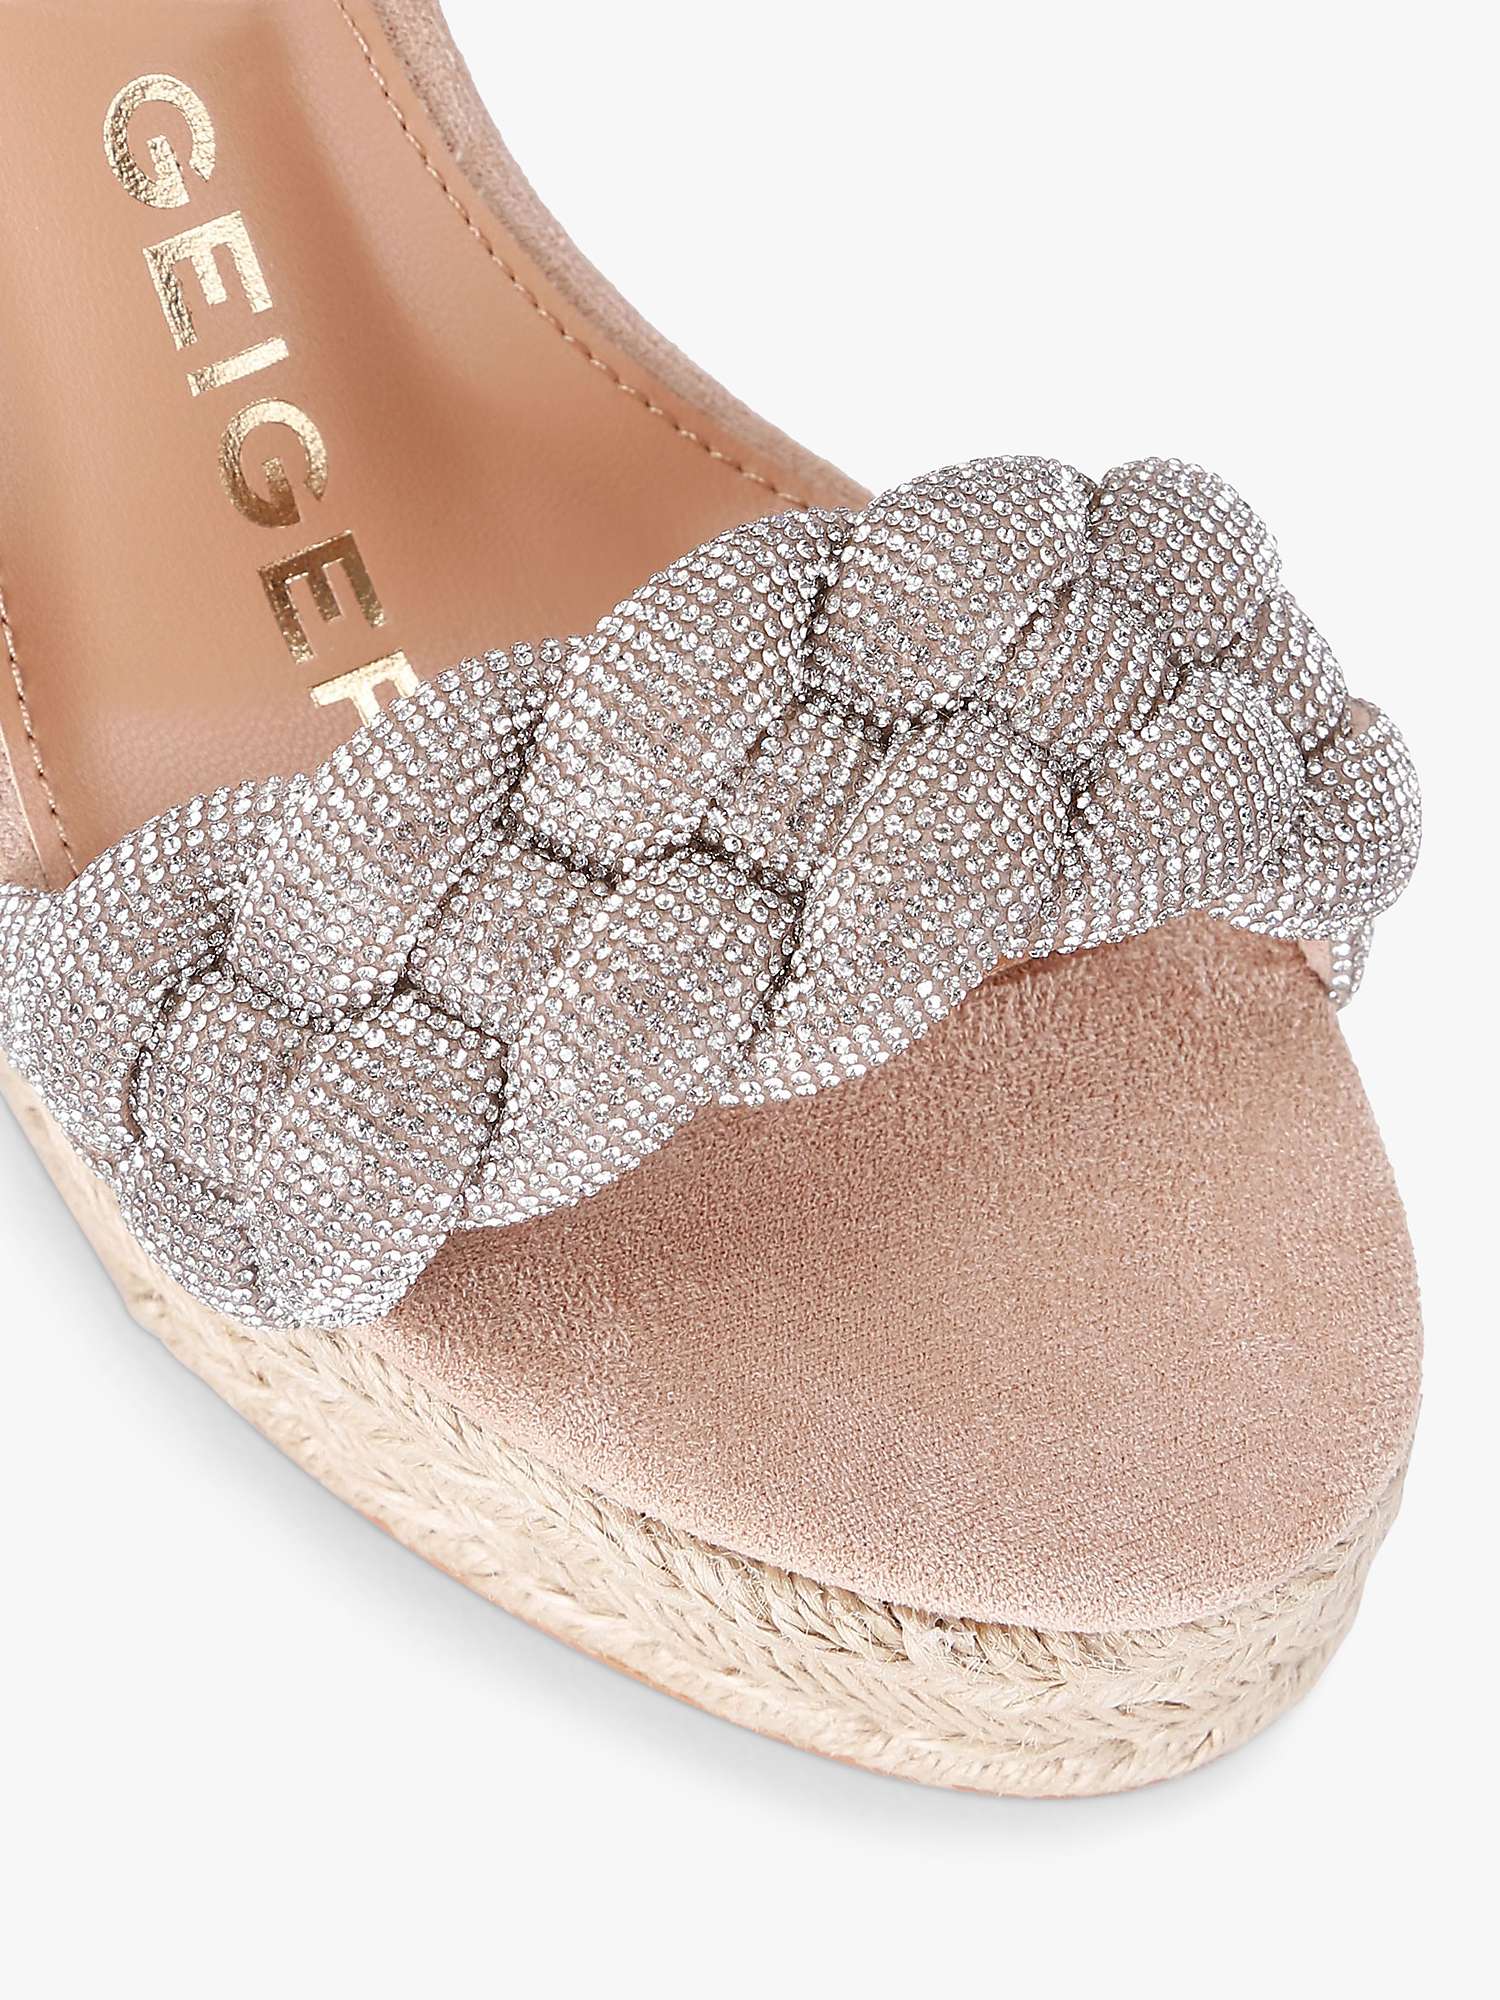 Buy KG Kurt Geiger Sadie Embellished Strap Wedge Sandals, Blush Online at johnlewis.com